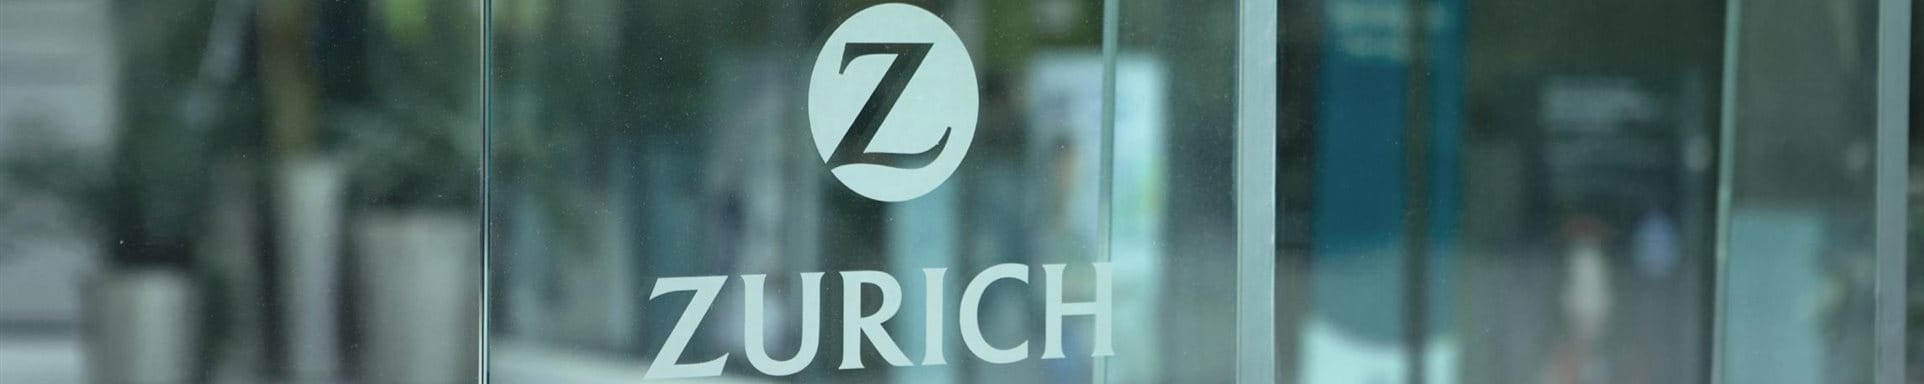 Une fenêtre avec le logo de la Zurich.